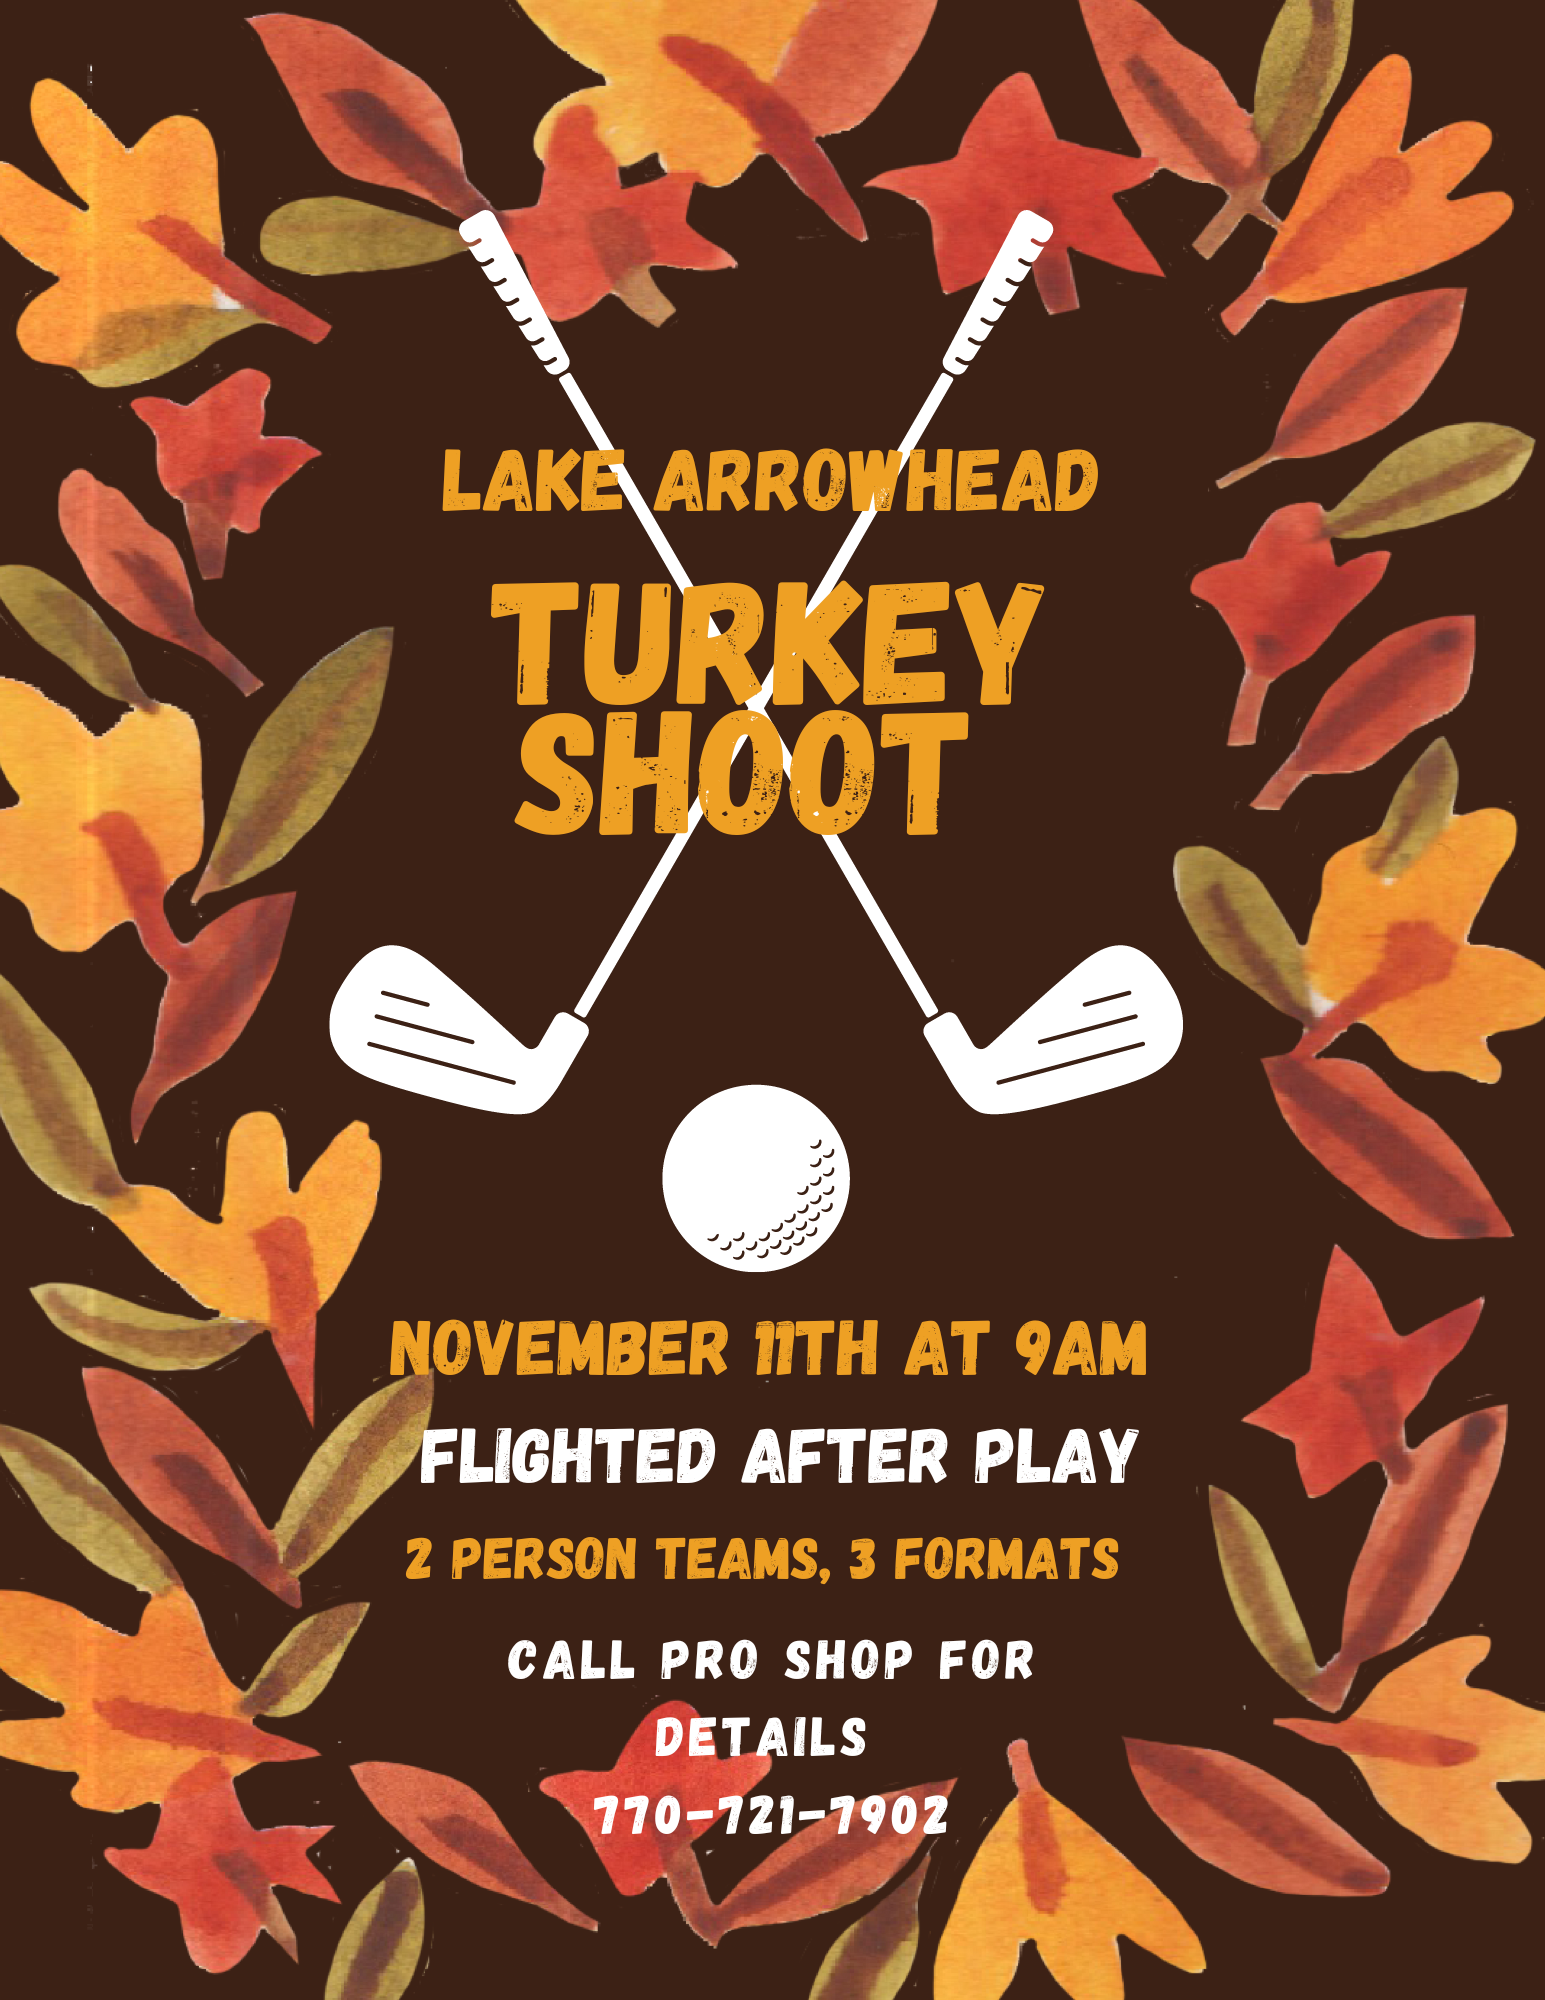 Turkey Shoot Golf Tournament November 11th